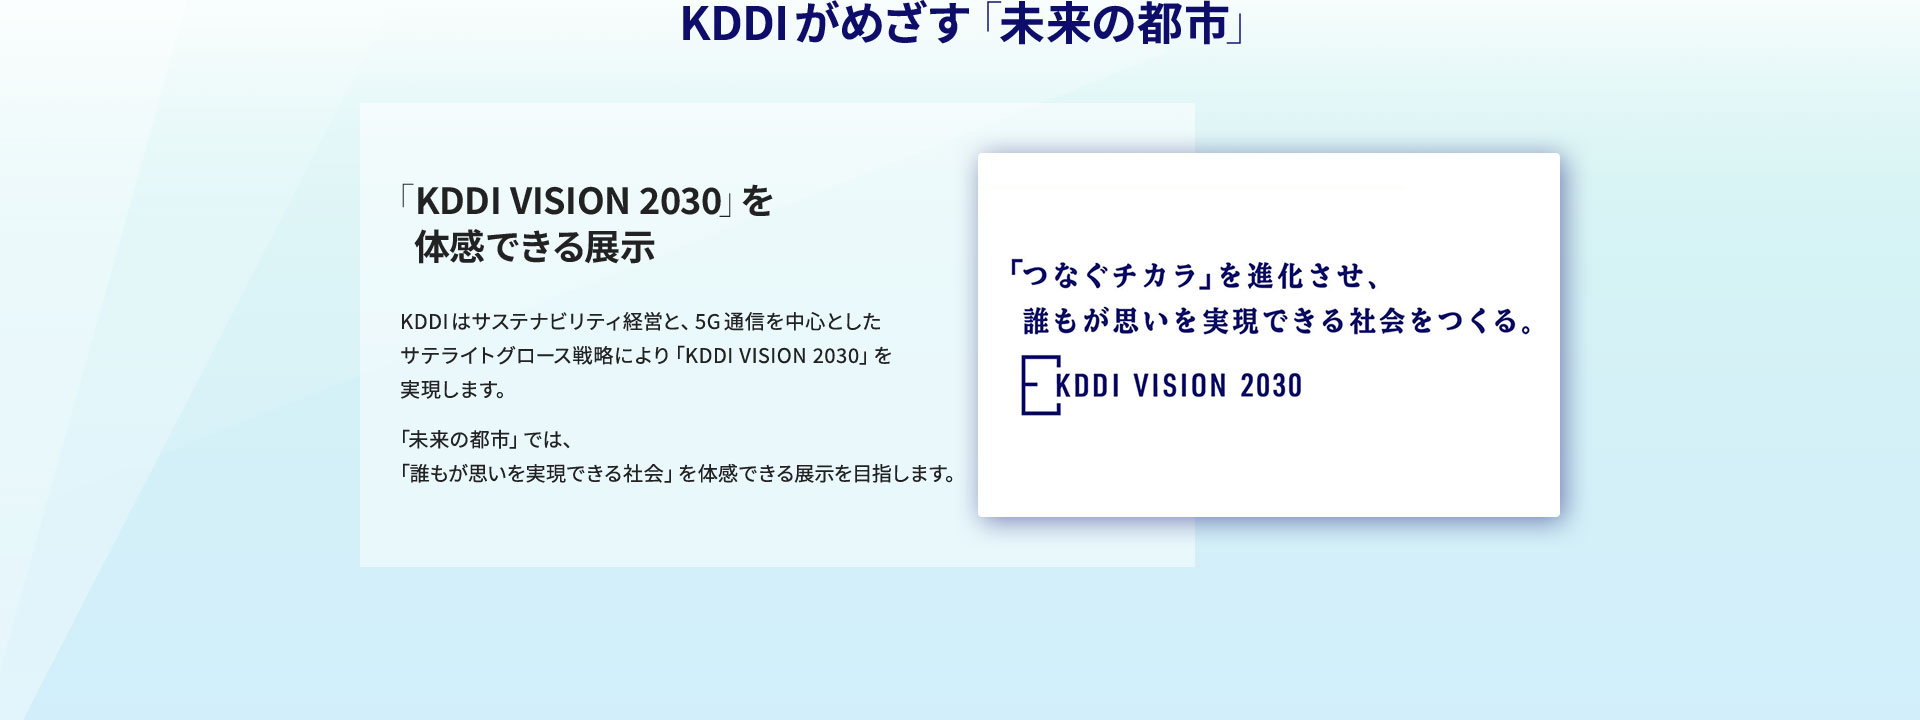 KDDIがめざす「未来の都市」 「KDDI VISION 2030」を体感できる展示 KDDIはサステナビリティ経営と、5G通信を中心としたサテライトグロース戦略により「KDDI VISION 2030」を実現します。「未来の都市」では、「誰もが思いを実現できる社会」を体感できる展示を目指します。